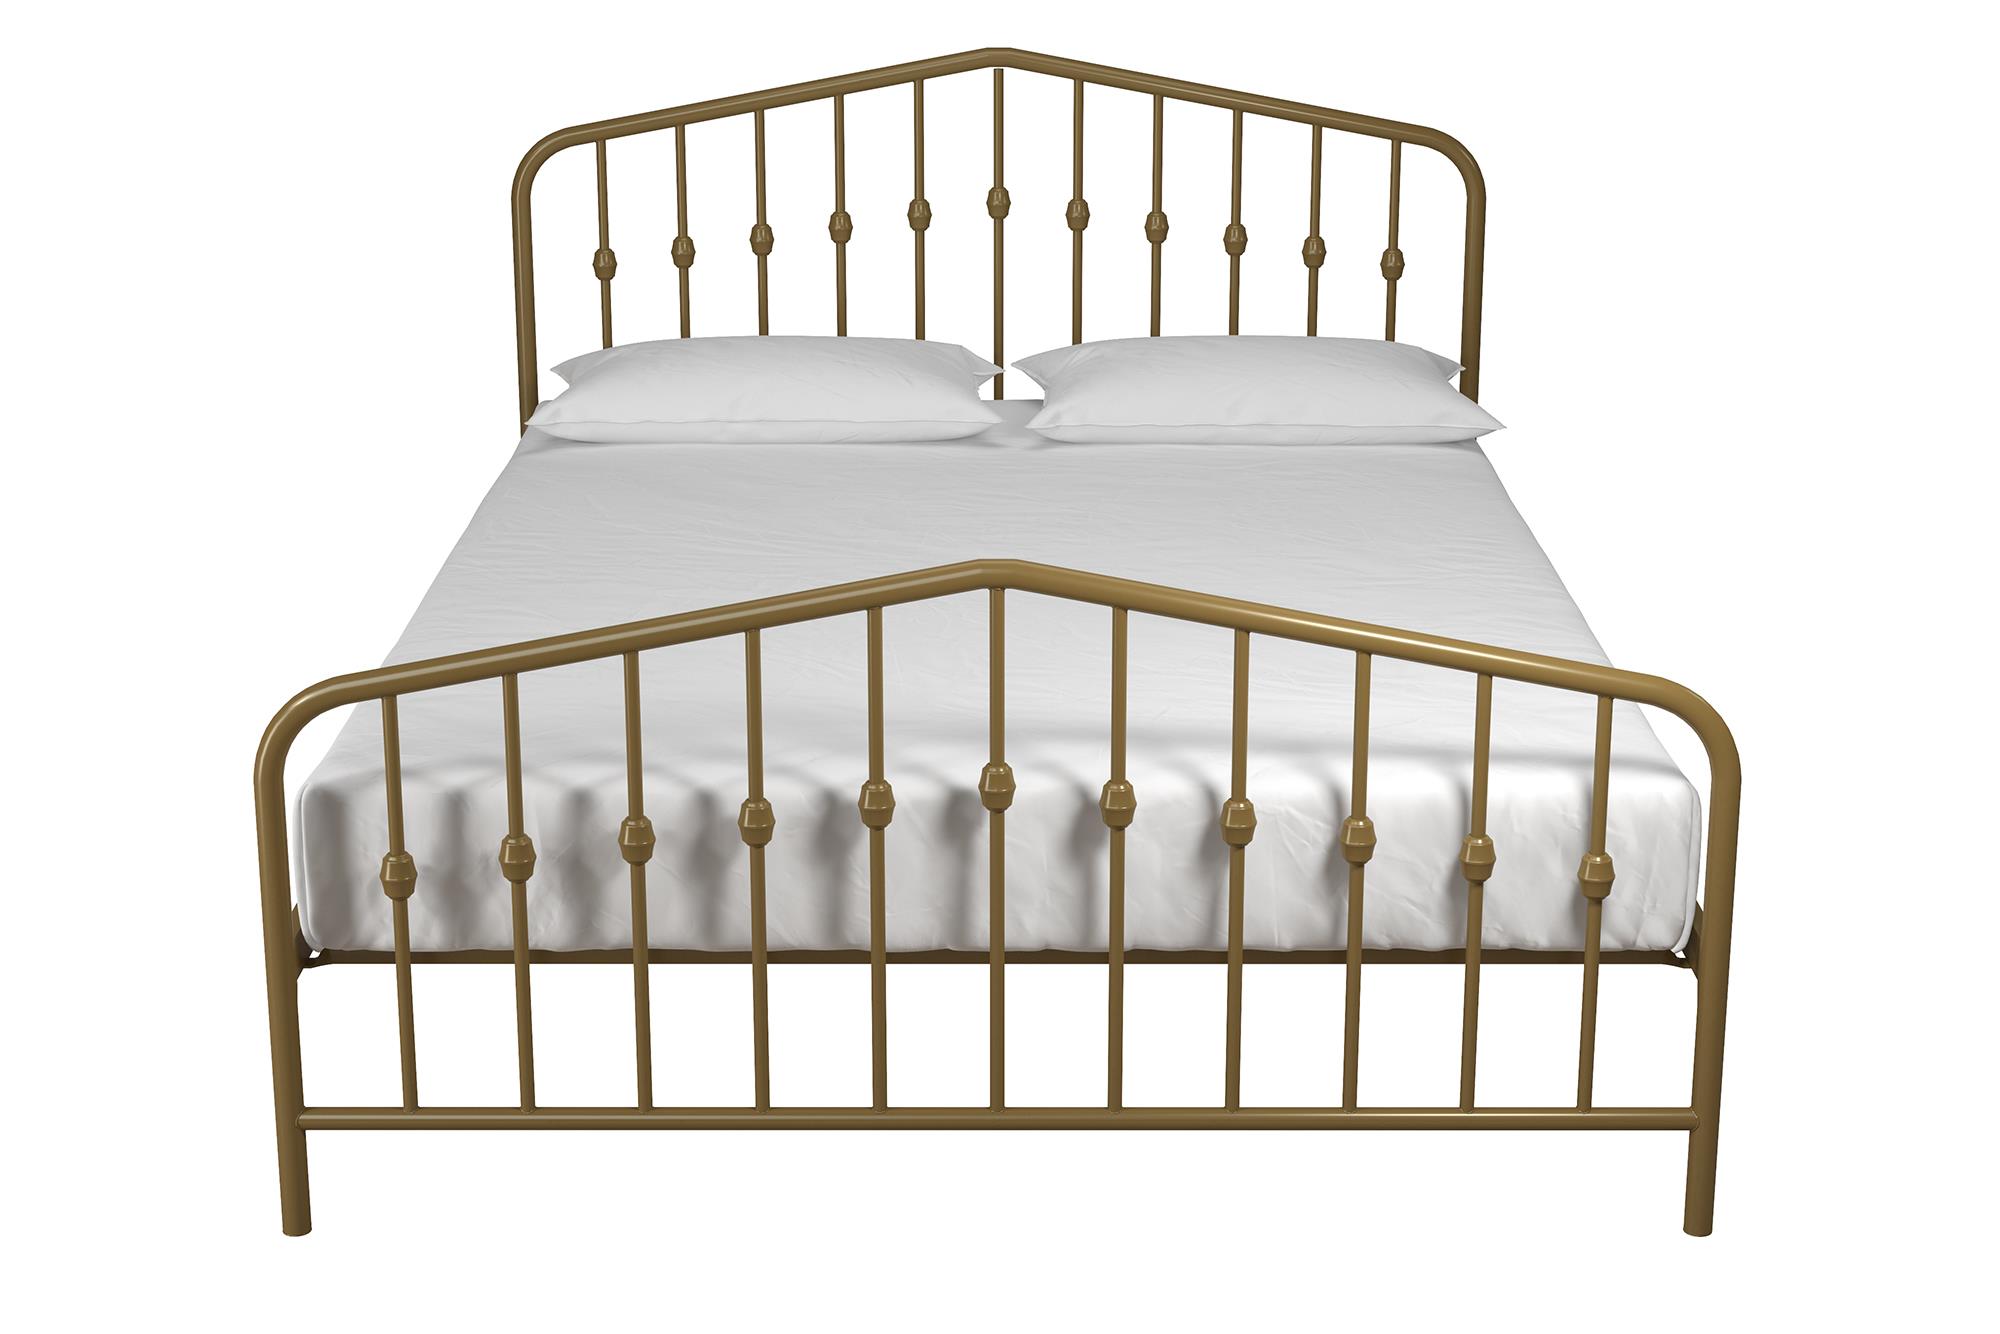 Novogratz Bushwick Metal Bed, Queen, Gold - image 1 of 20